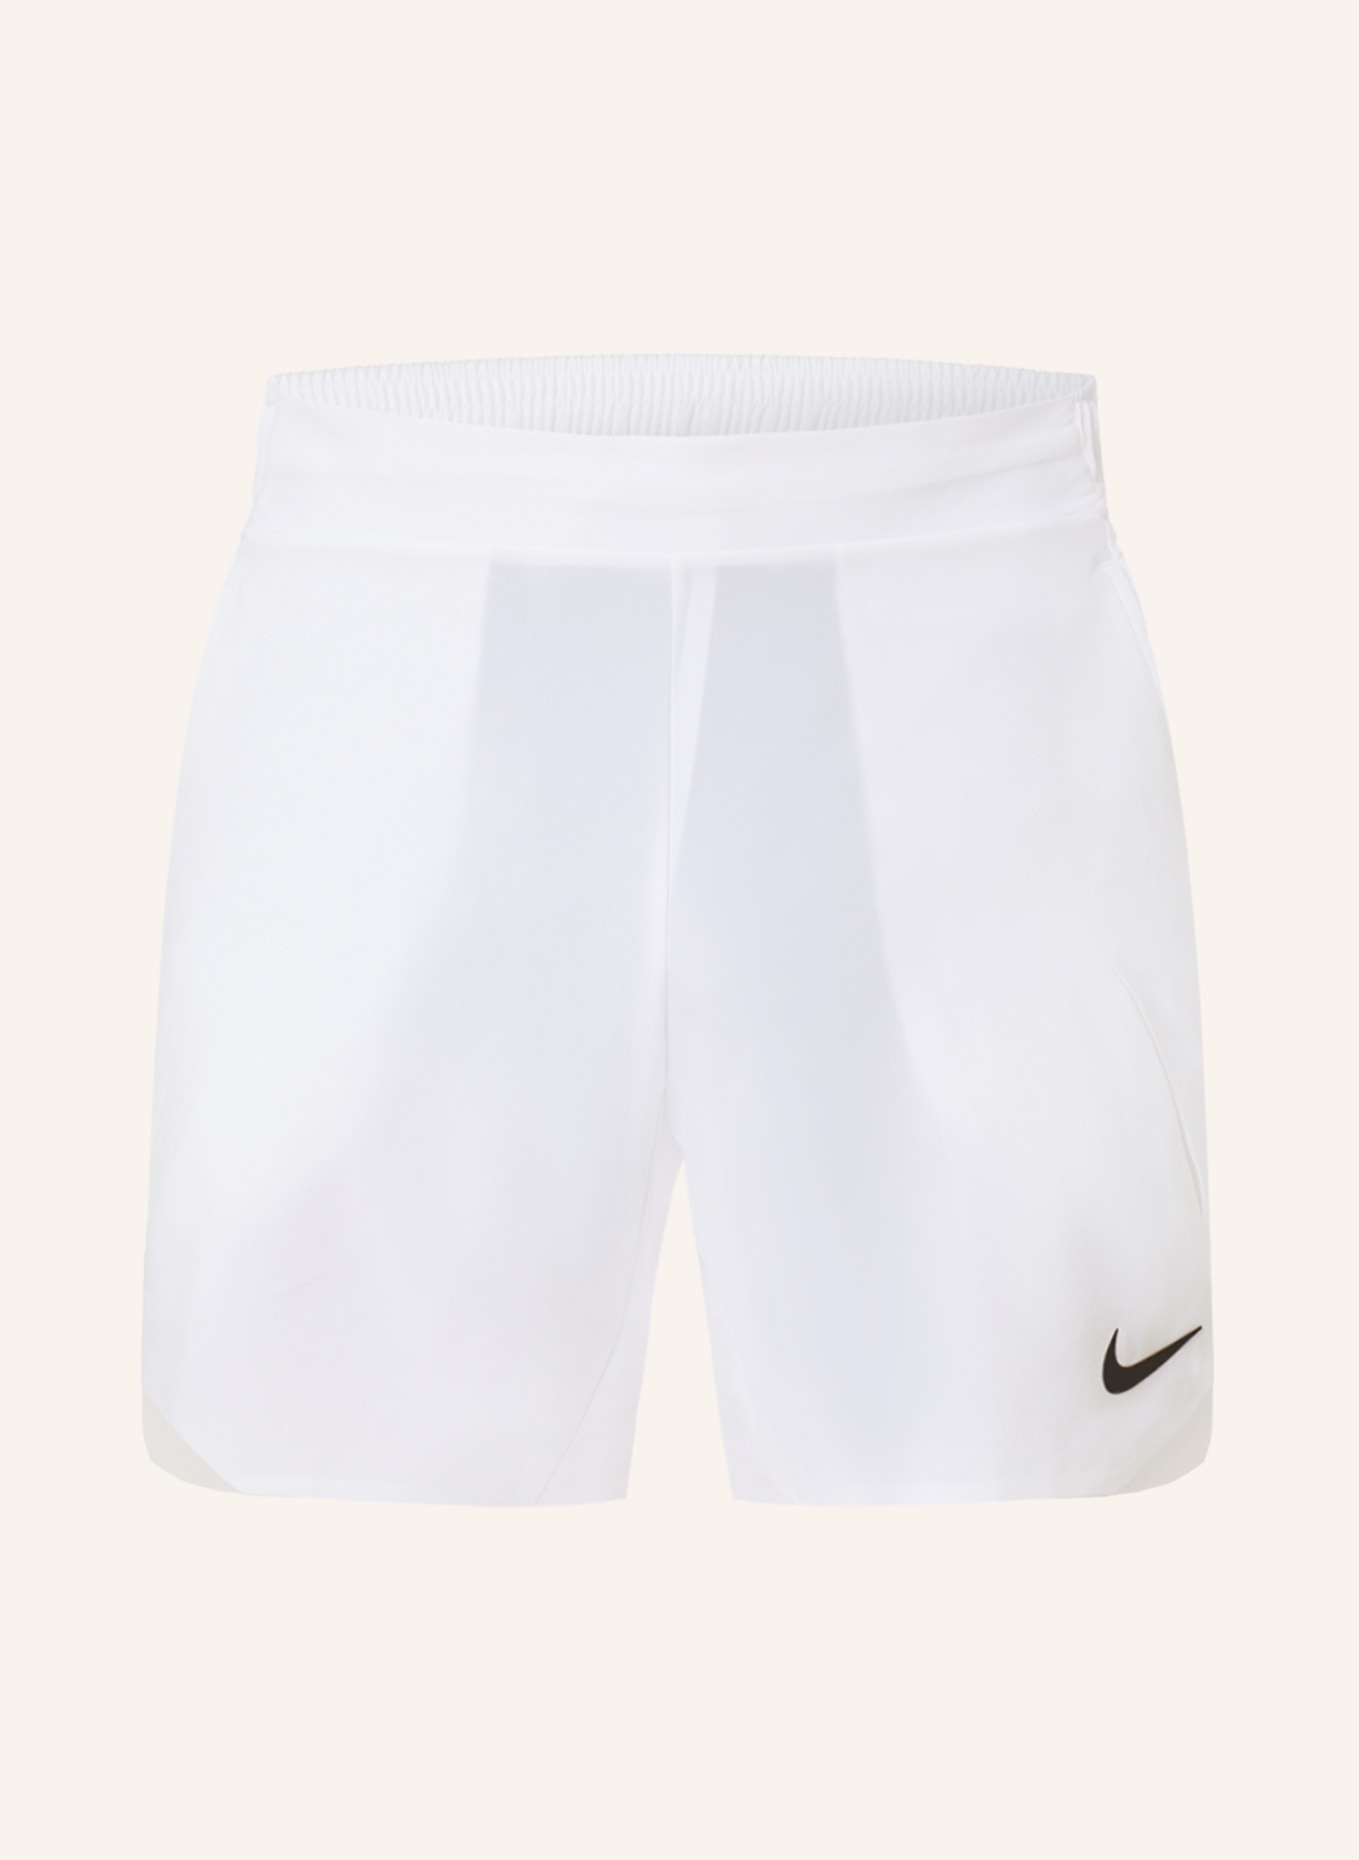 Nike Tennis shorts DRI-FIT SLAM, Color: WHITE (Image 1)